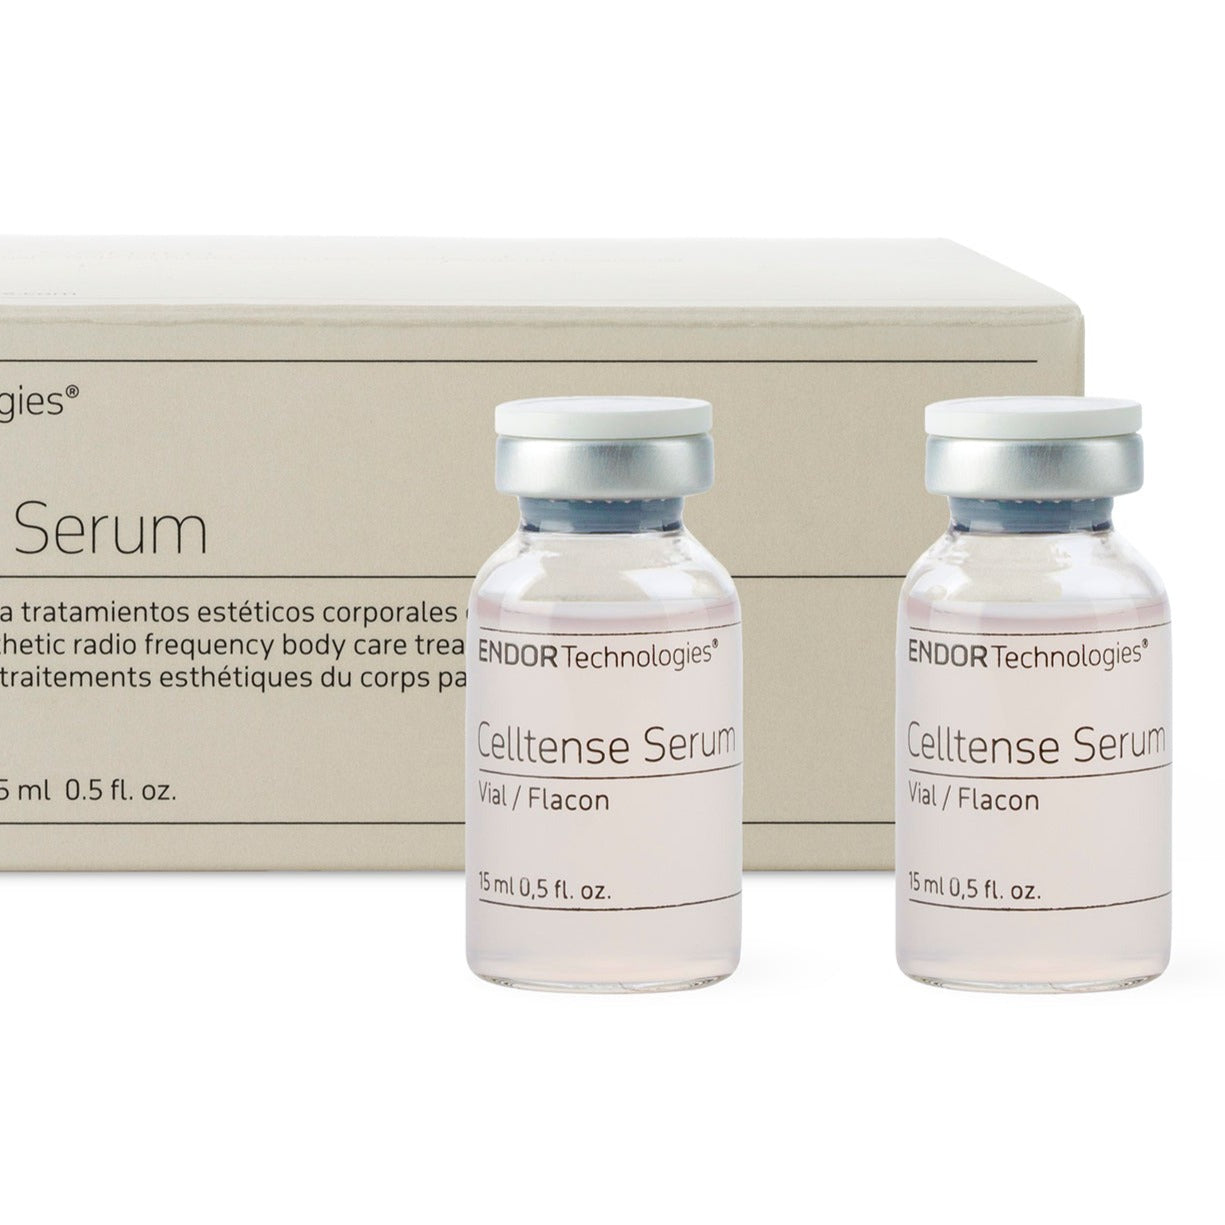 ENDOR Celltense™ Serum